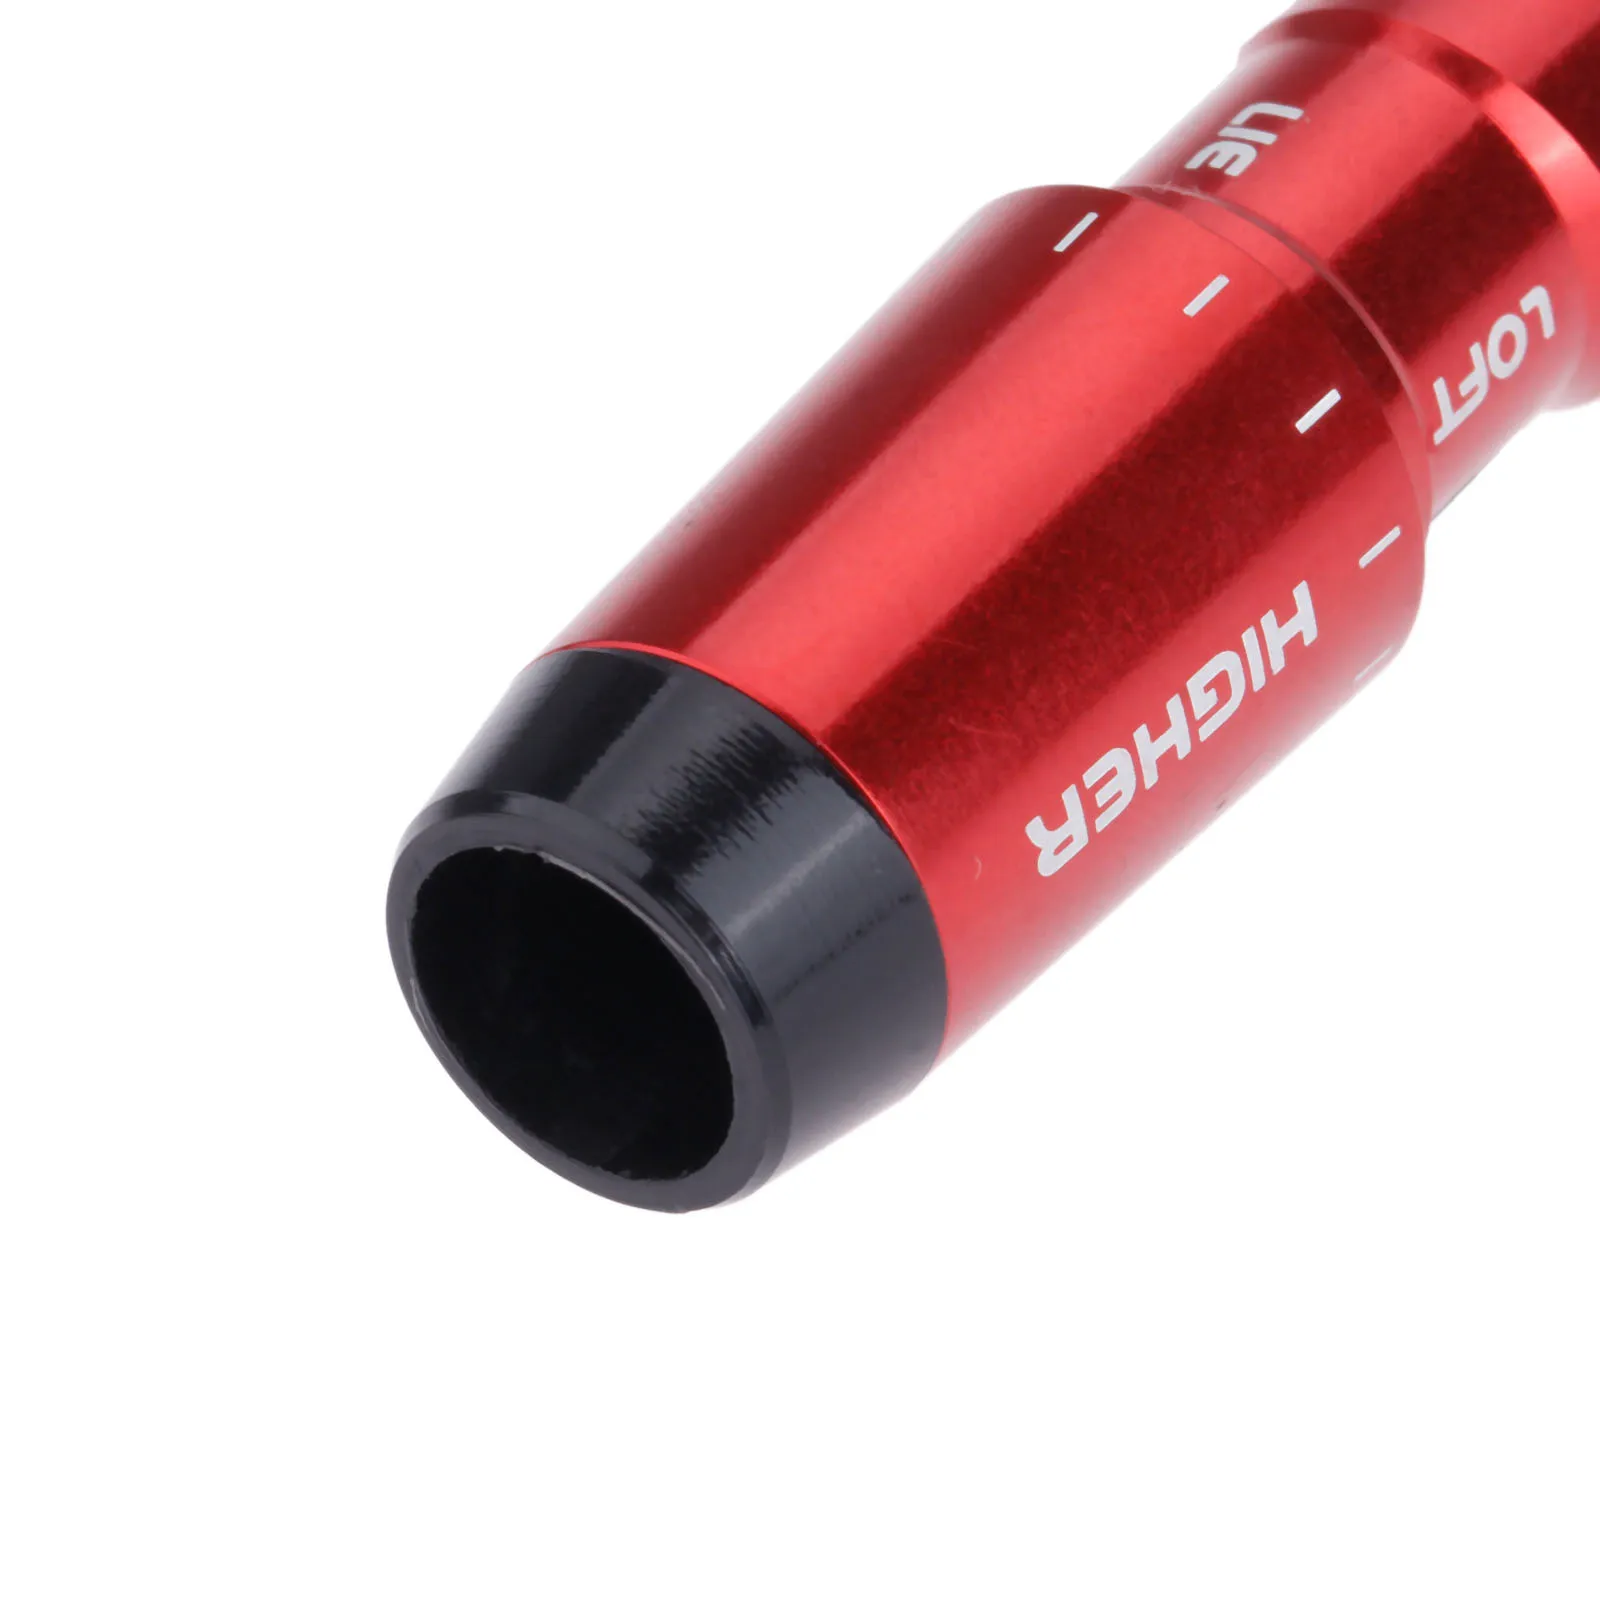 Красная алюминиевая Гольф муфта соединительного адаптера Замена для Taylormade M1 размер драйвера 0,335 рукав вала 2 градусов регулировки